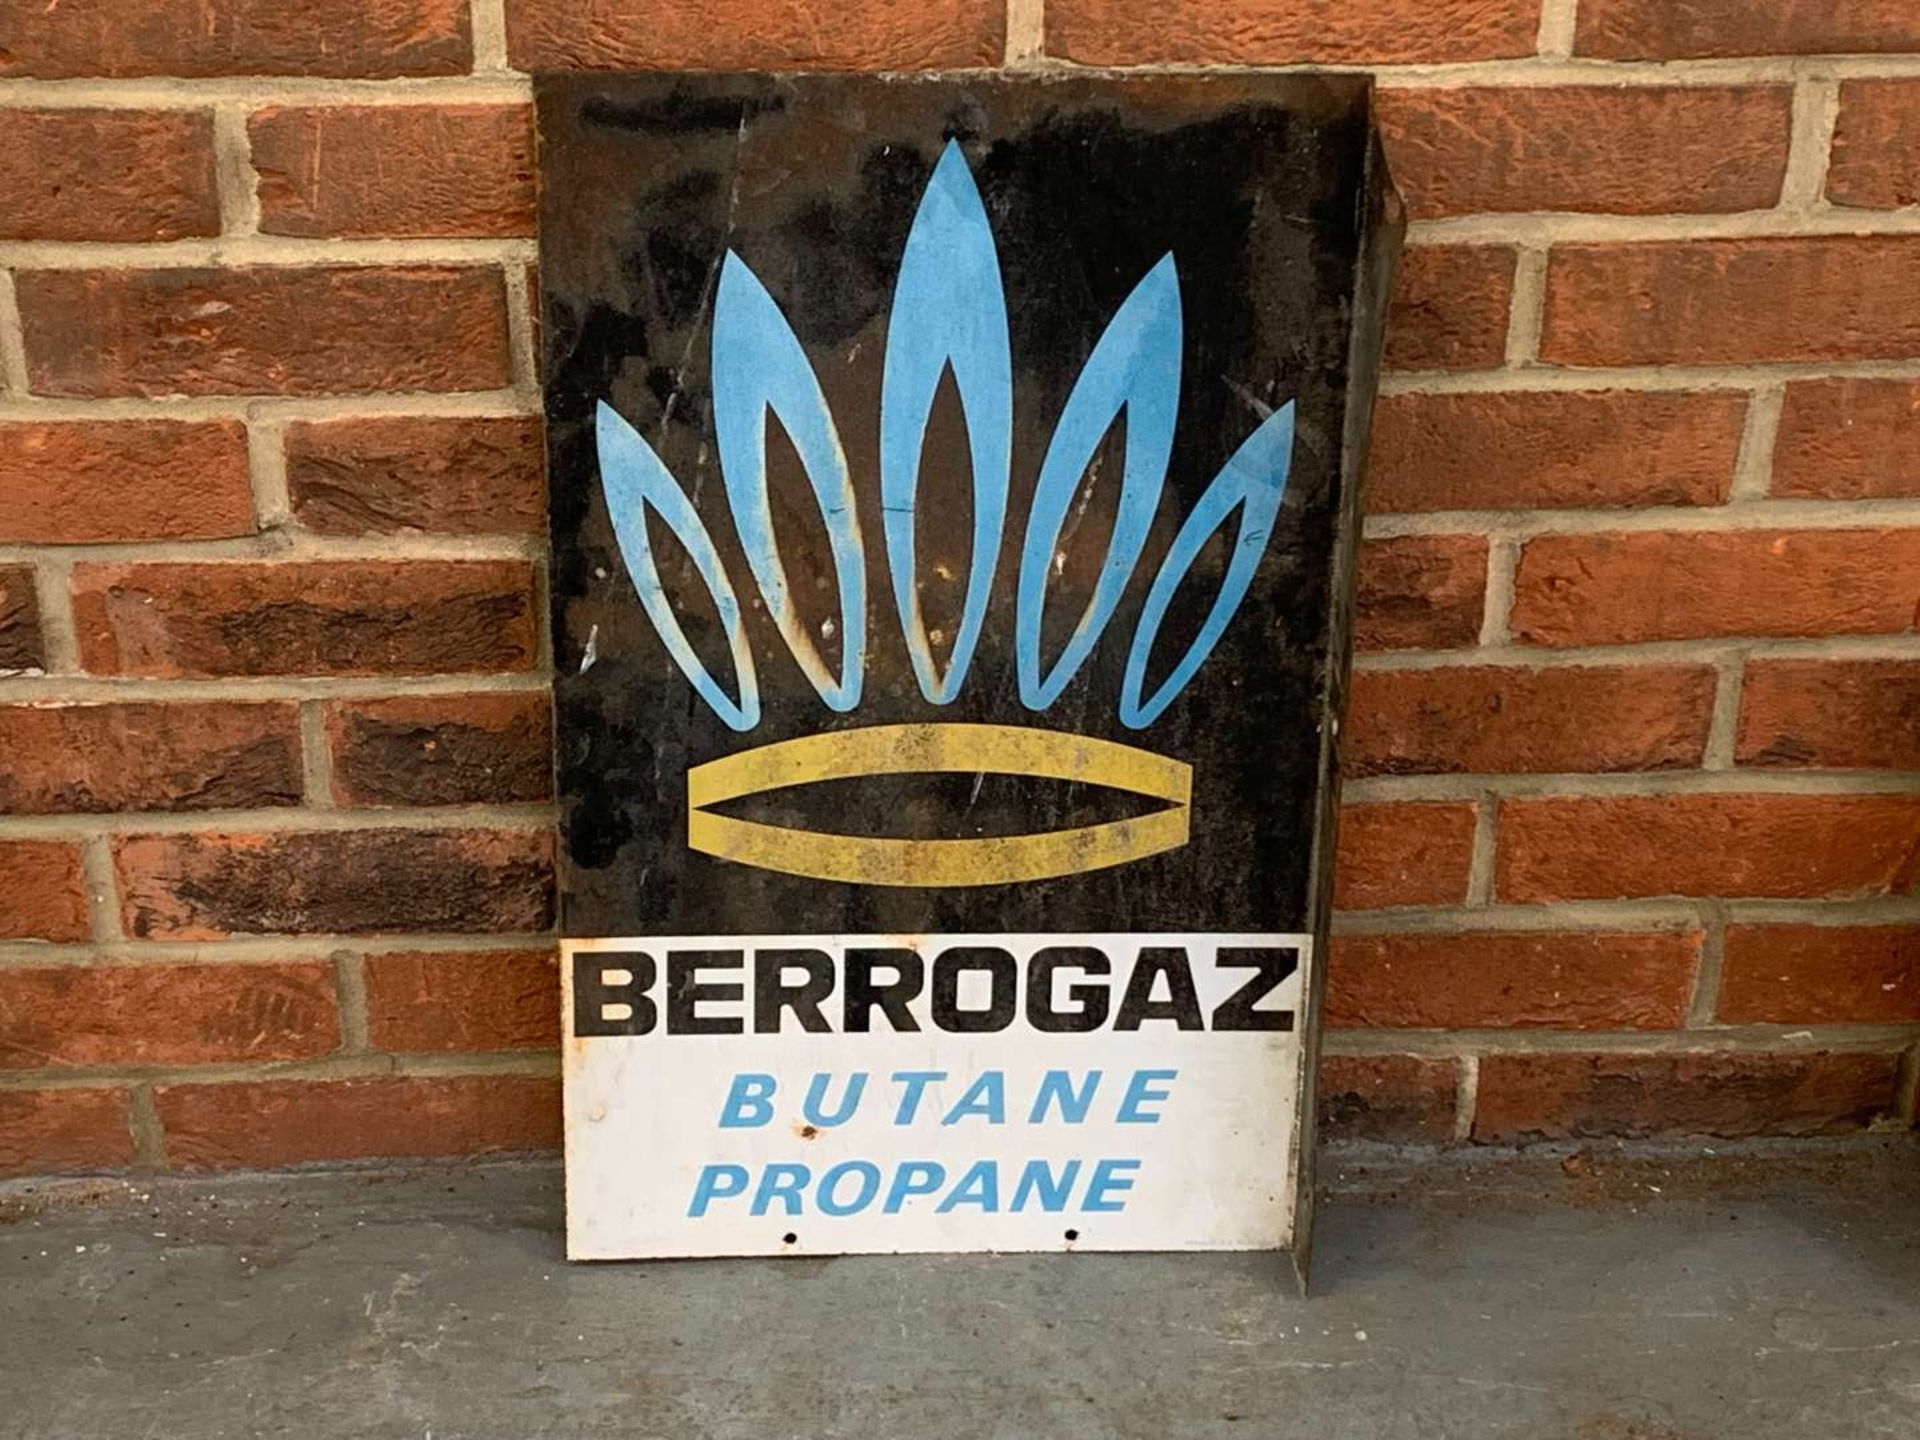 Berrogaz Metal Flange Sign - Image 2 of 2